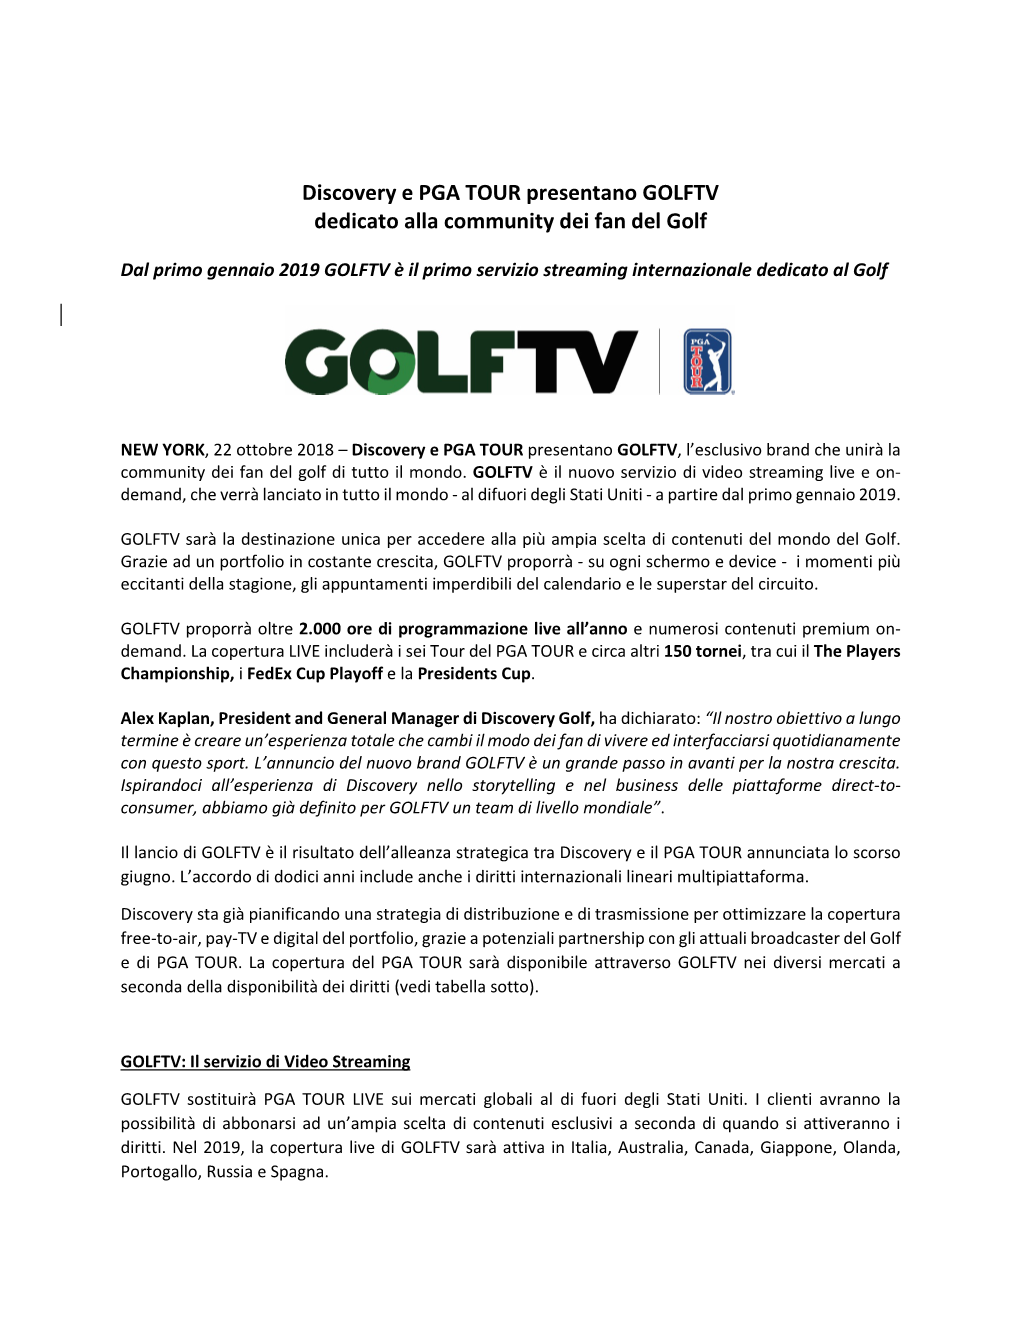 Discovery E PGA TOUR Presentano GOLFTV Dedicato Alla Community Dei Fan Del Golf